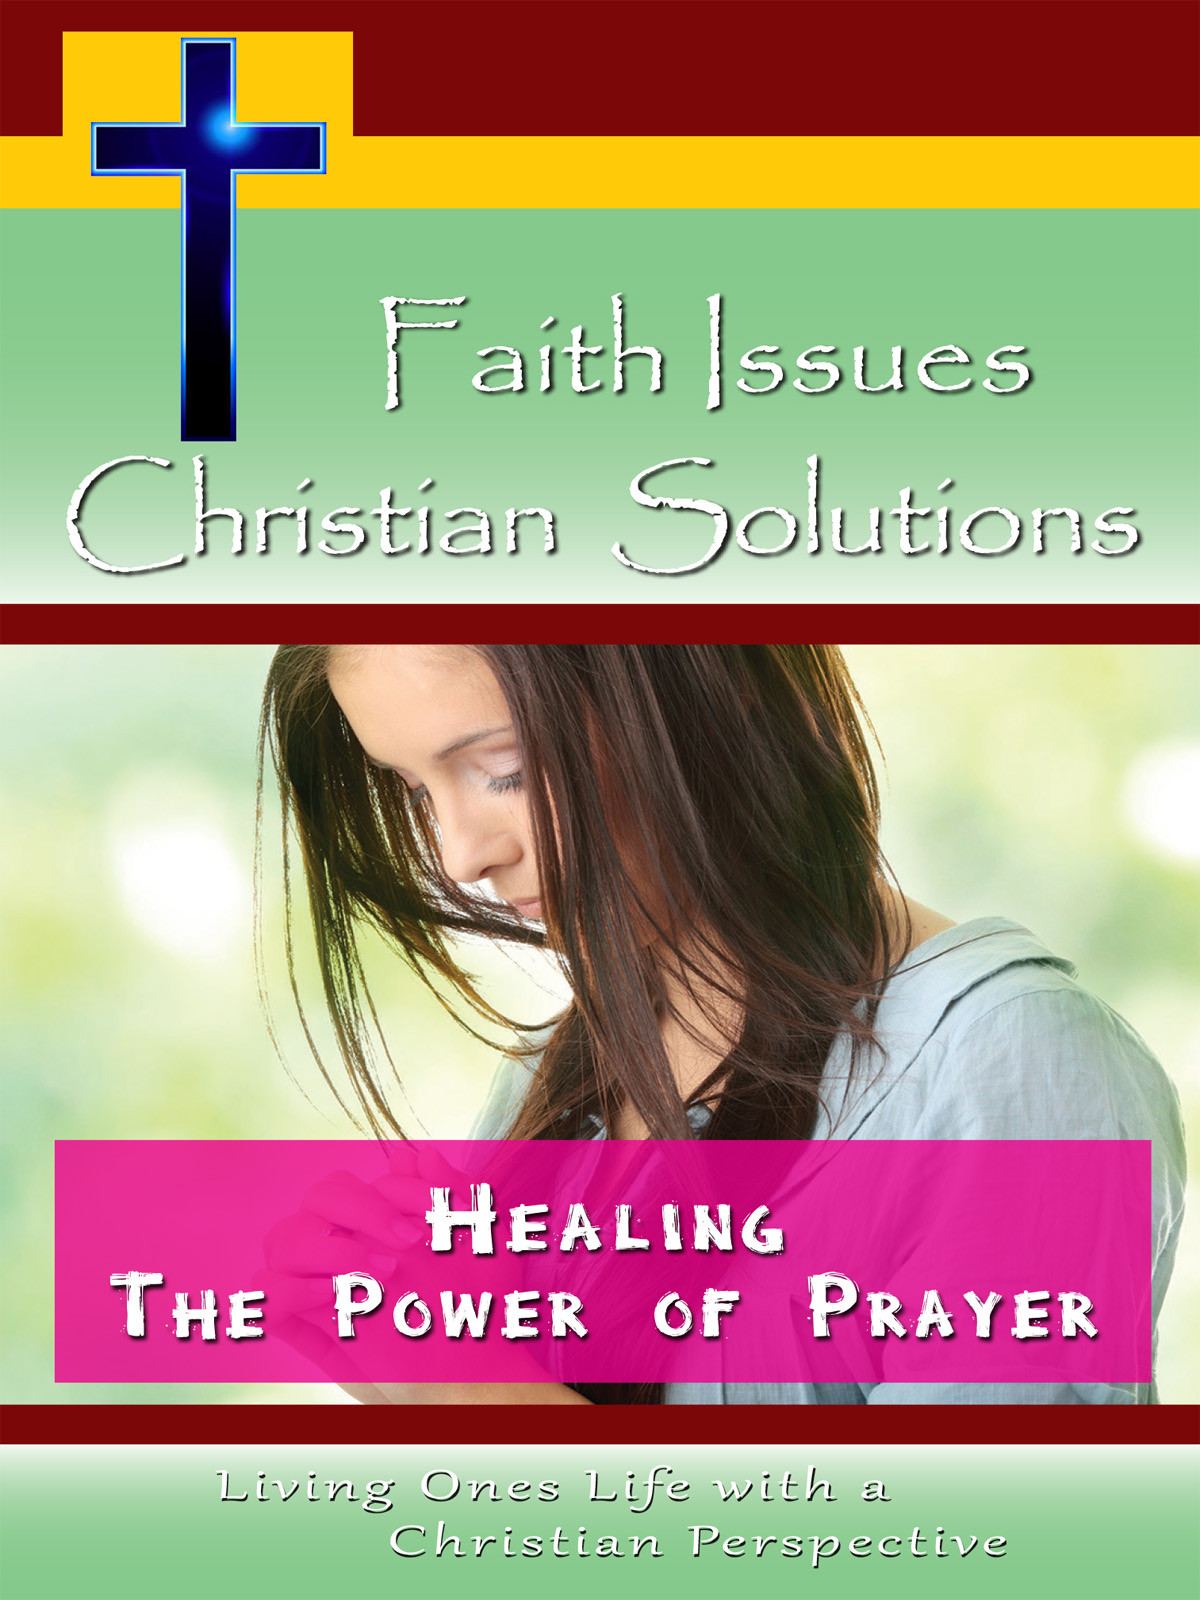 CH10018 - Healing The Power of Prayer